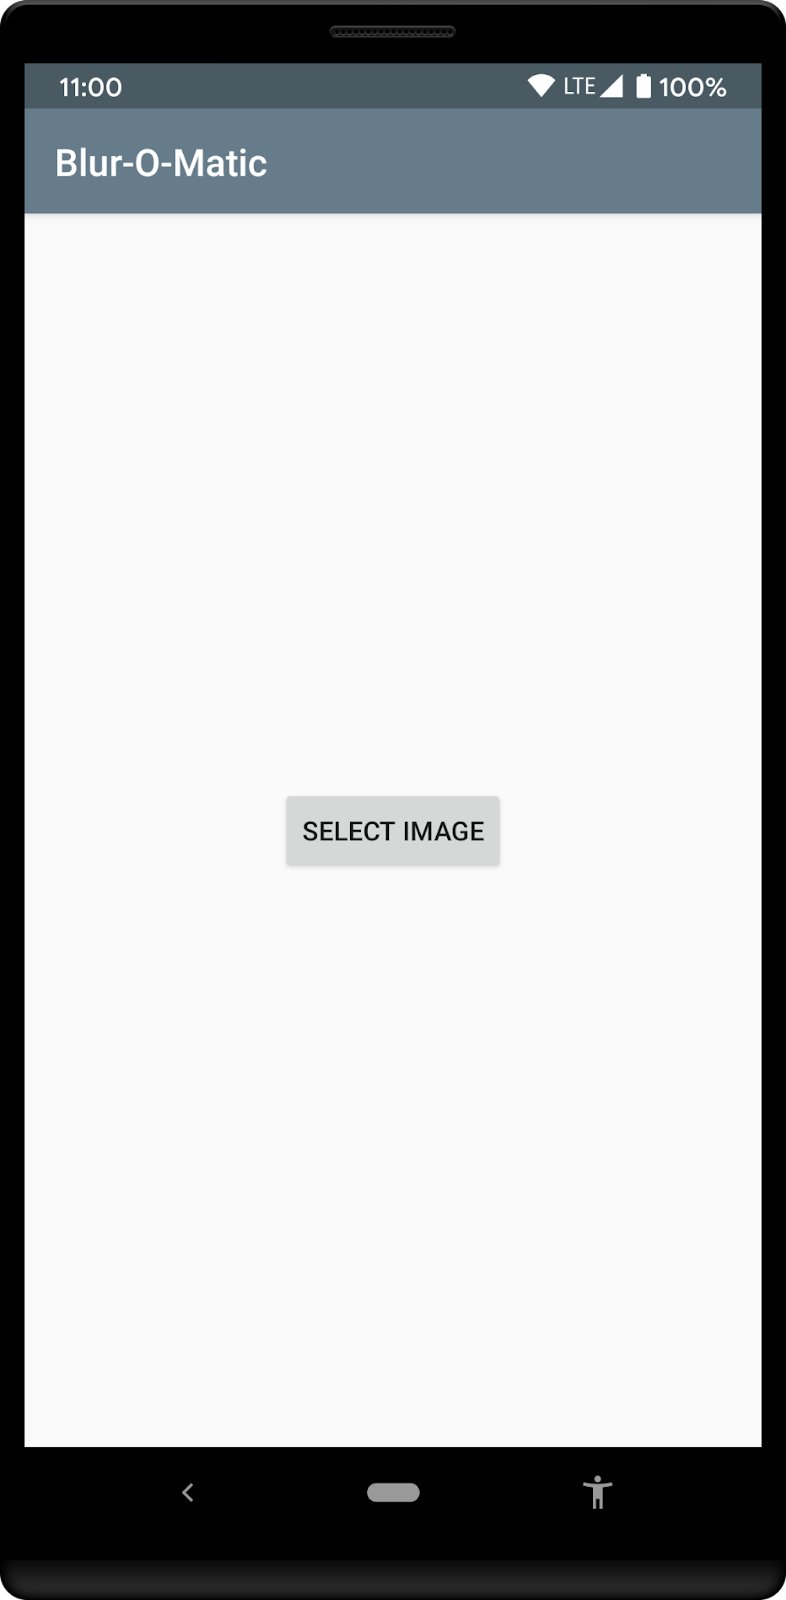 사용자에게 사진 갤러리에서 이미지를 선택하라는 메시지를 표시하는 앱의 시작 화면입니다.